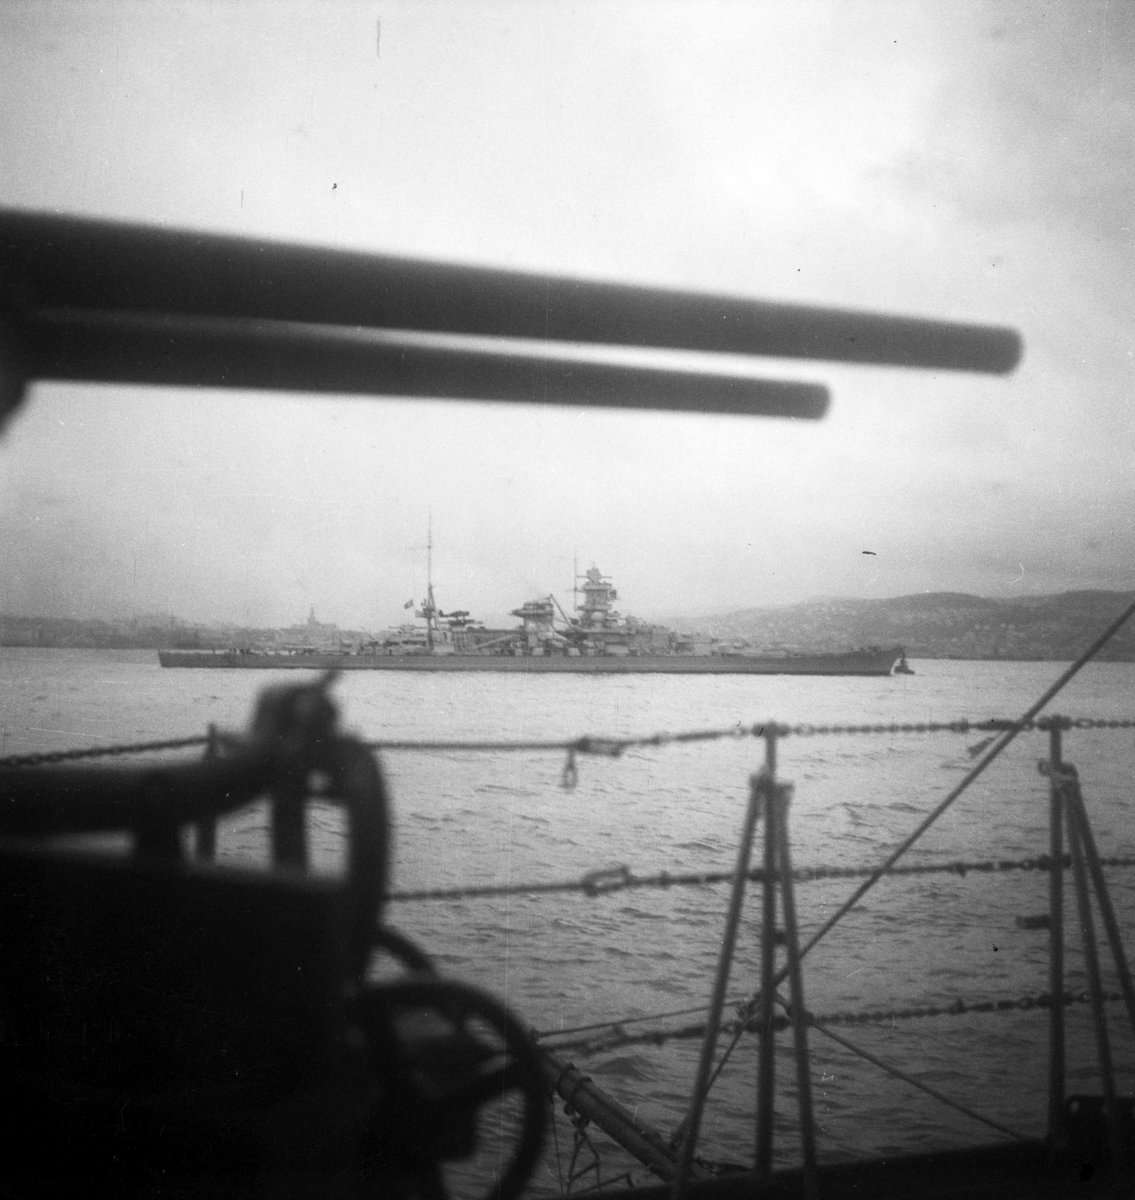 Tyske krigsskip på fjorden - Scharnhorst i bakgrunnen